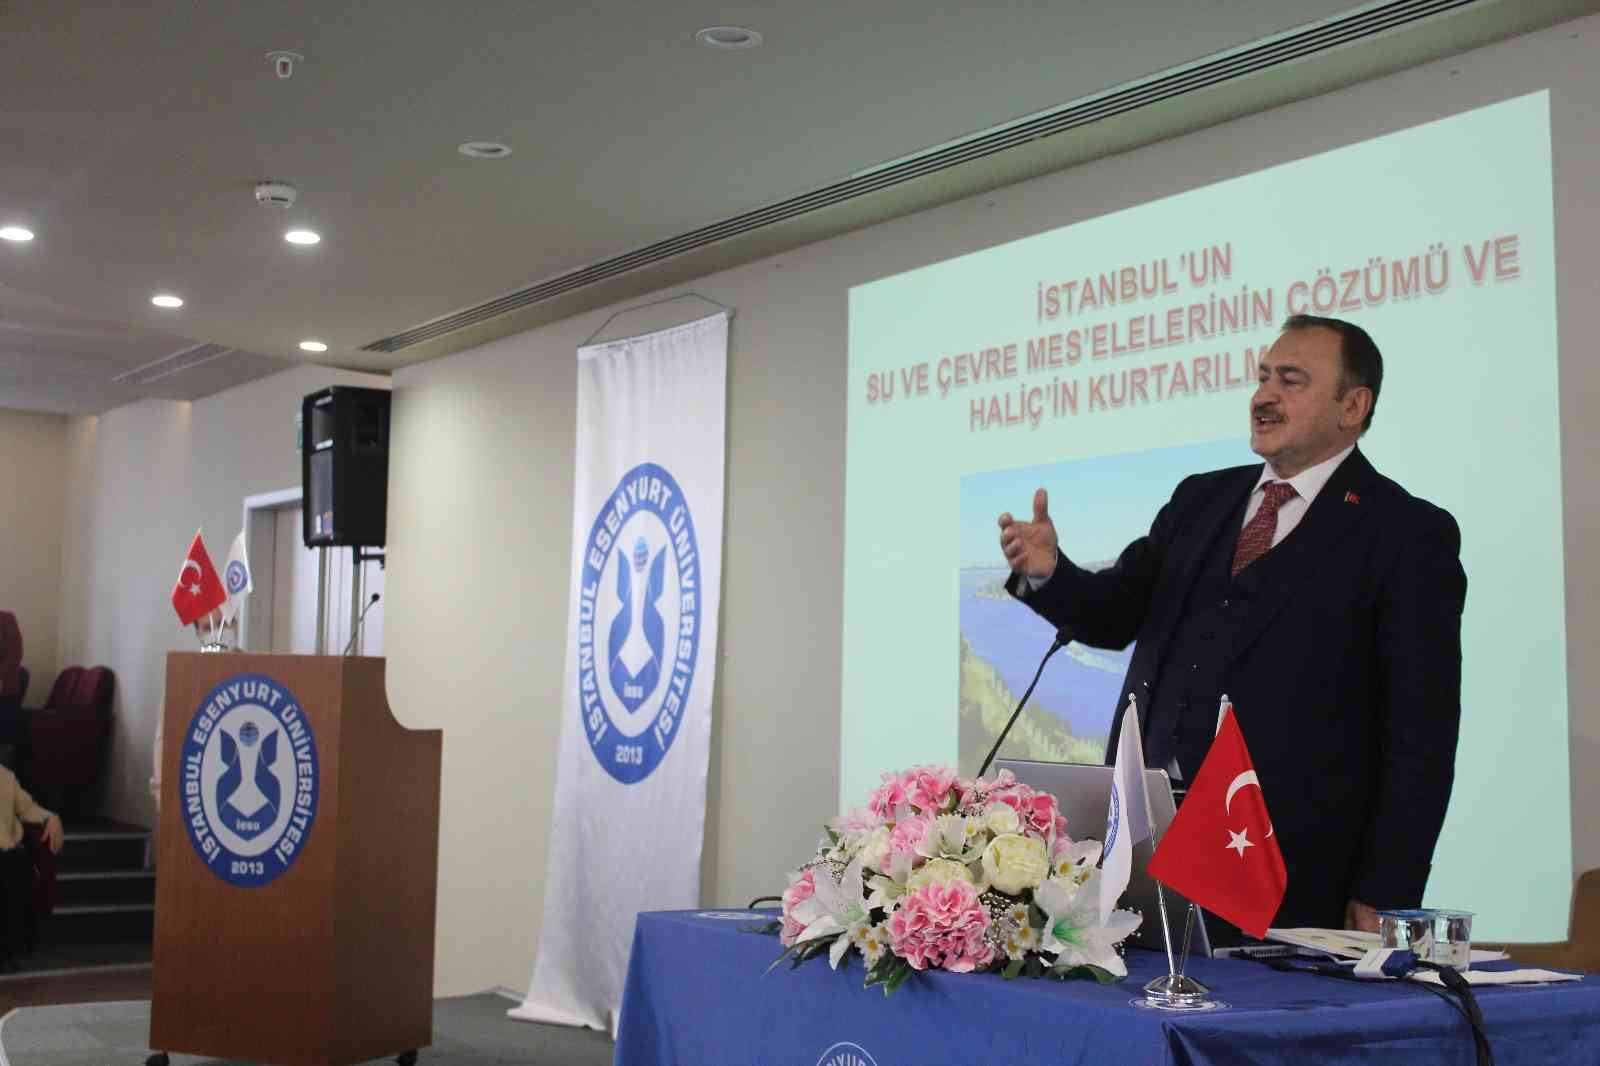 Prof. Dr. Veysel Eroğlu Melen Barajı iddialarına yanıt verdi: